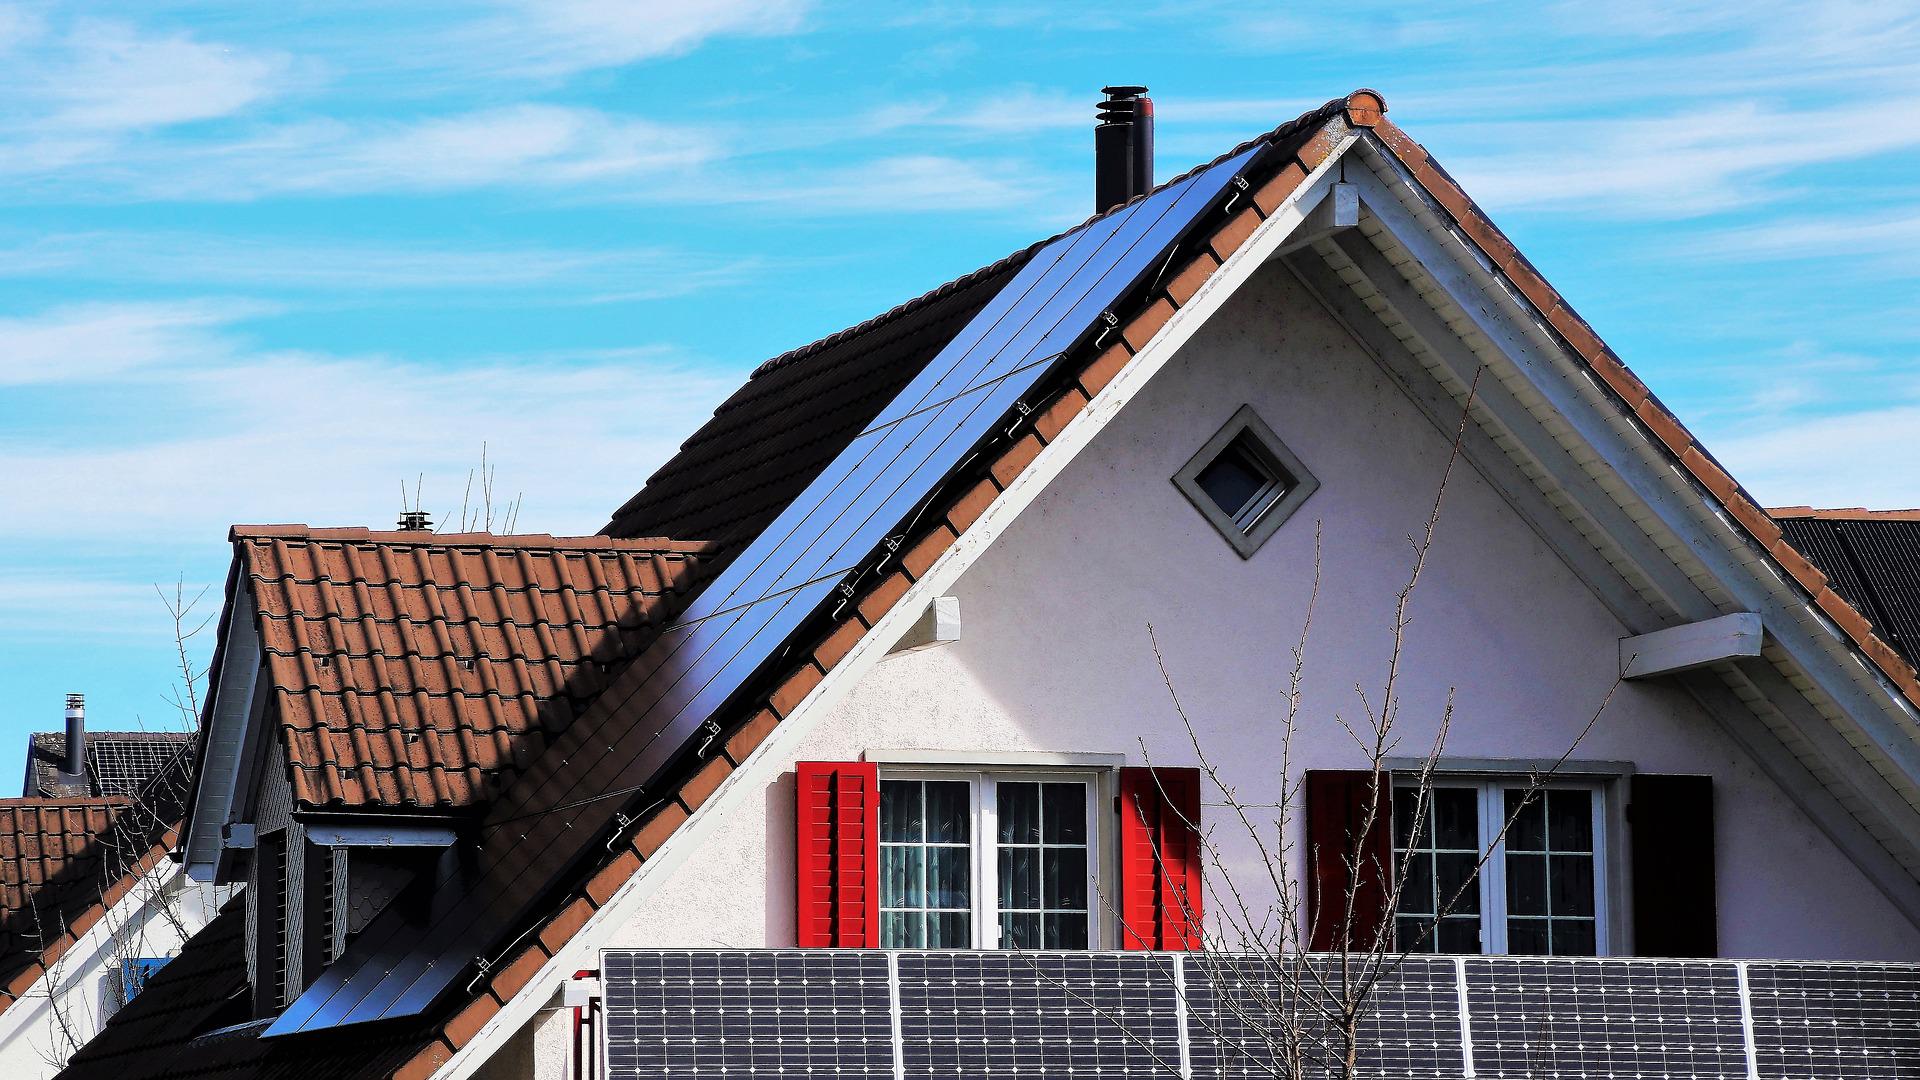 Avantatges socials, energètics, ambientals i econòmics de l’autoconsum fotovoltaic